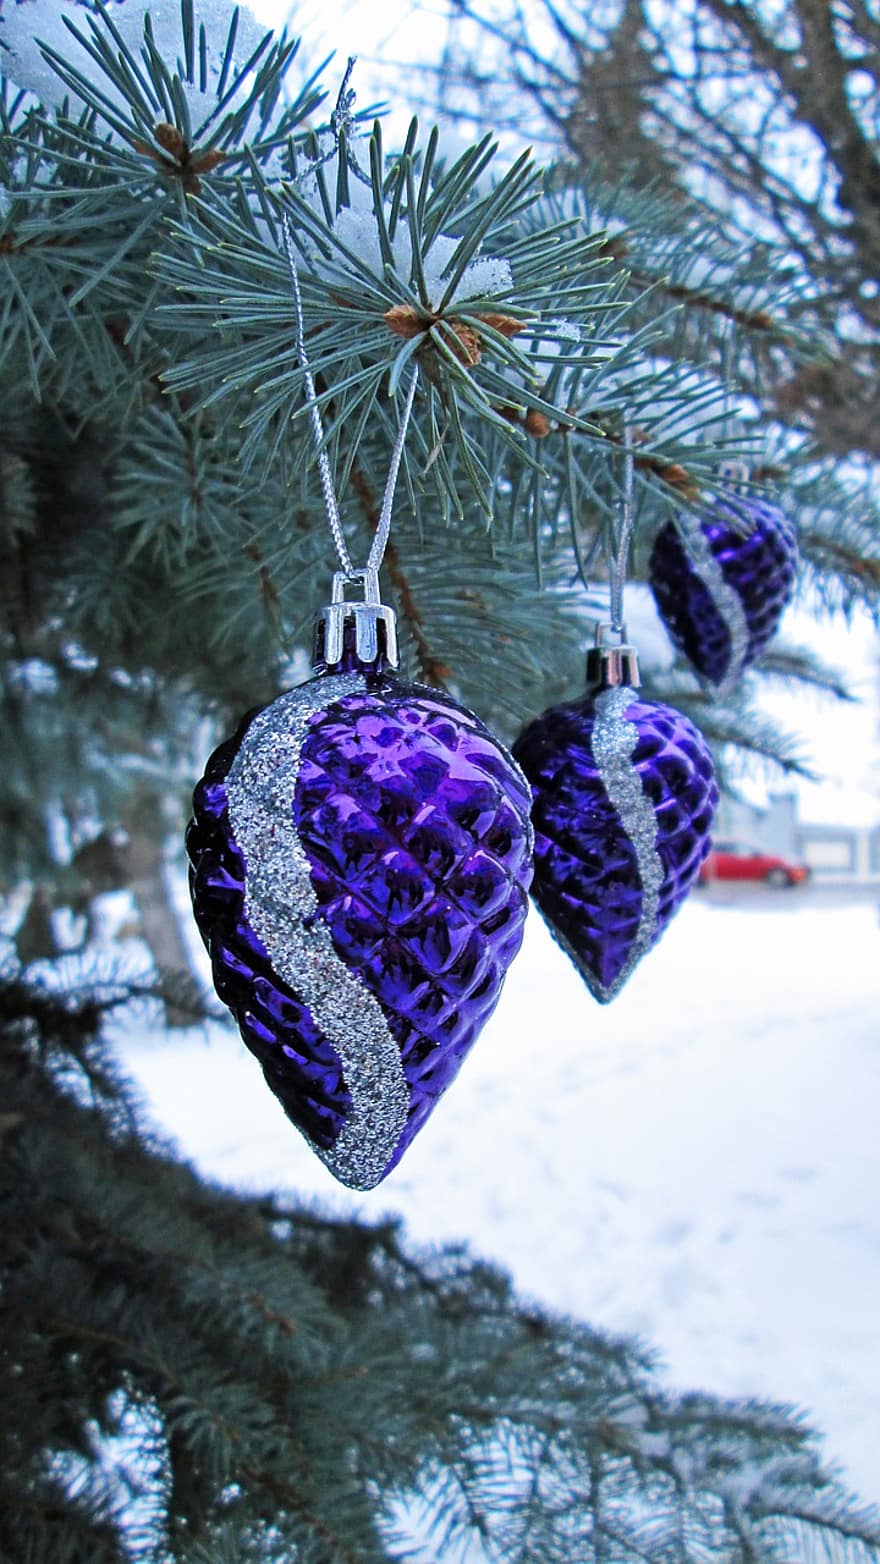 クリスマスツリー、クリスマスつまらないもの、雪、冬、クリスマス、クリスマスの飾り、クリスマスの装飾、飾り物、つまらないもの、デコレーション、装飾